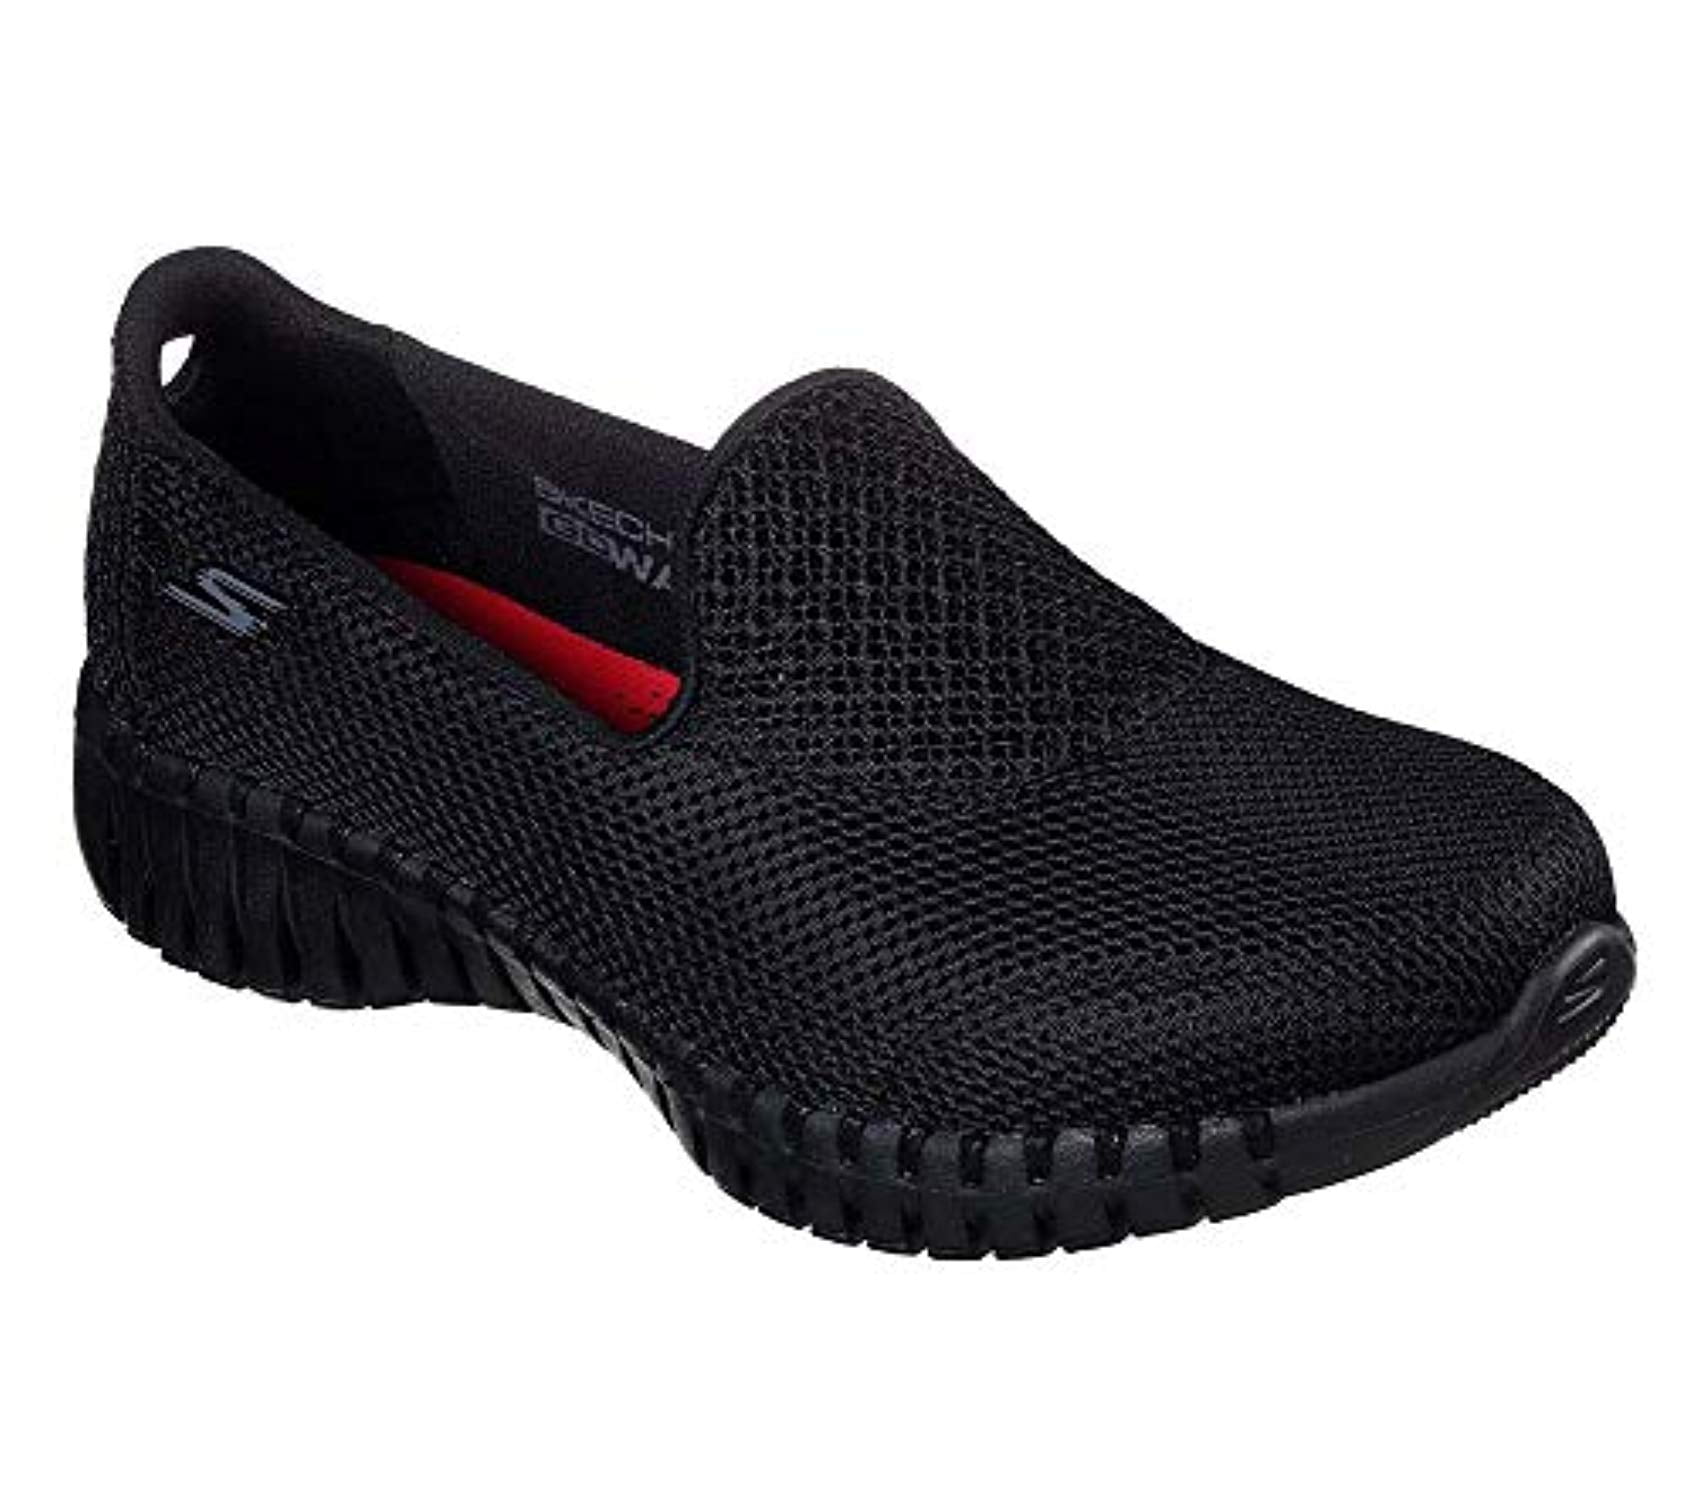 Skechers - Skechers Women's GO Walk Smart - 16700 Shoe, Black, 8 M US ...